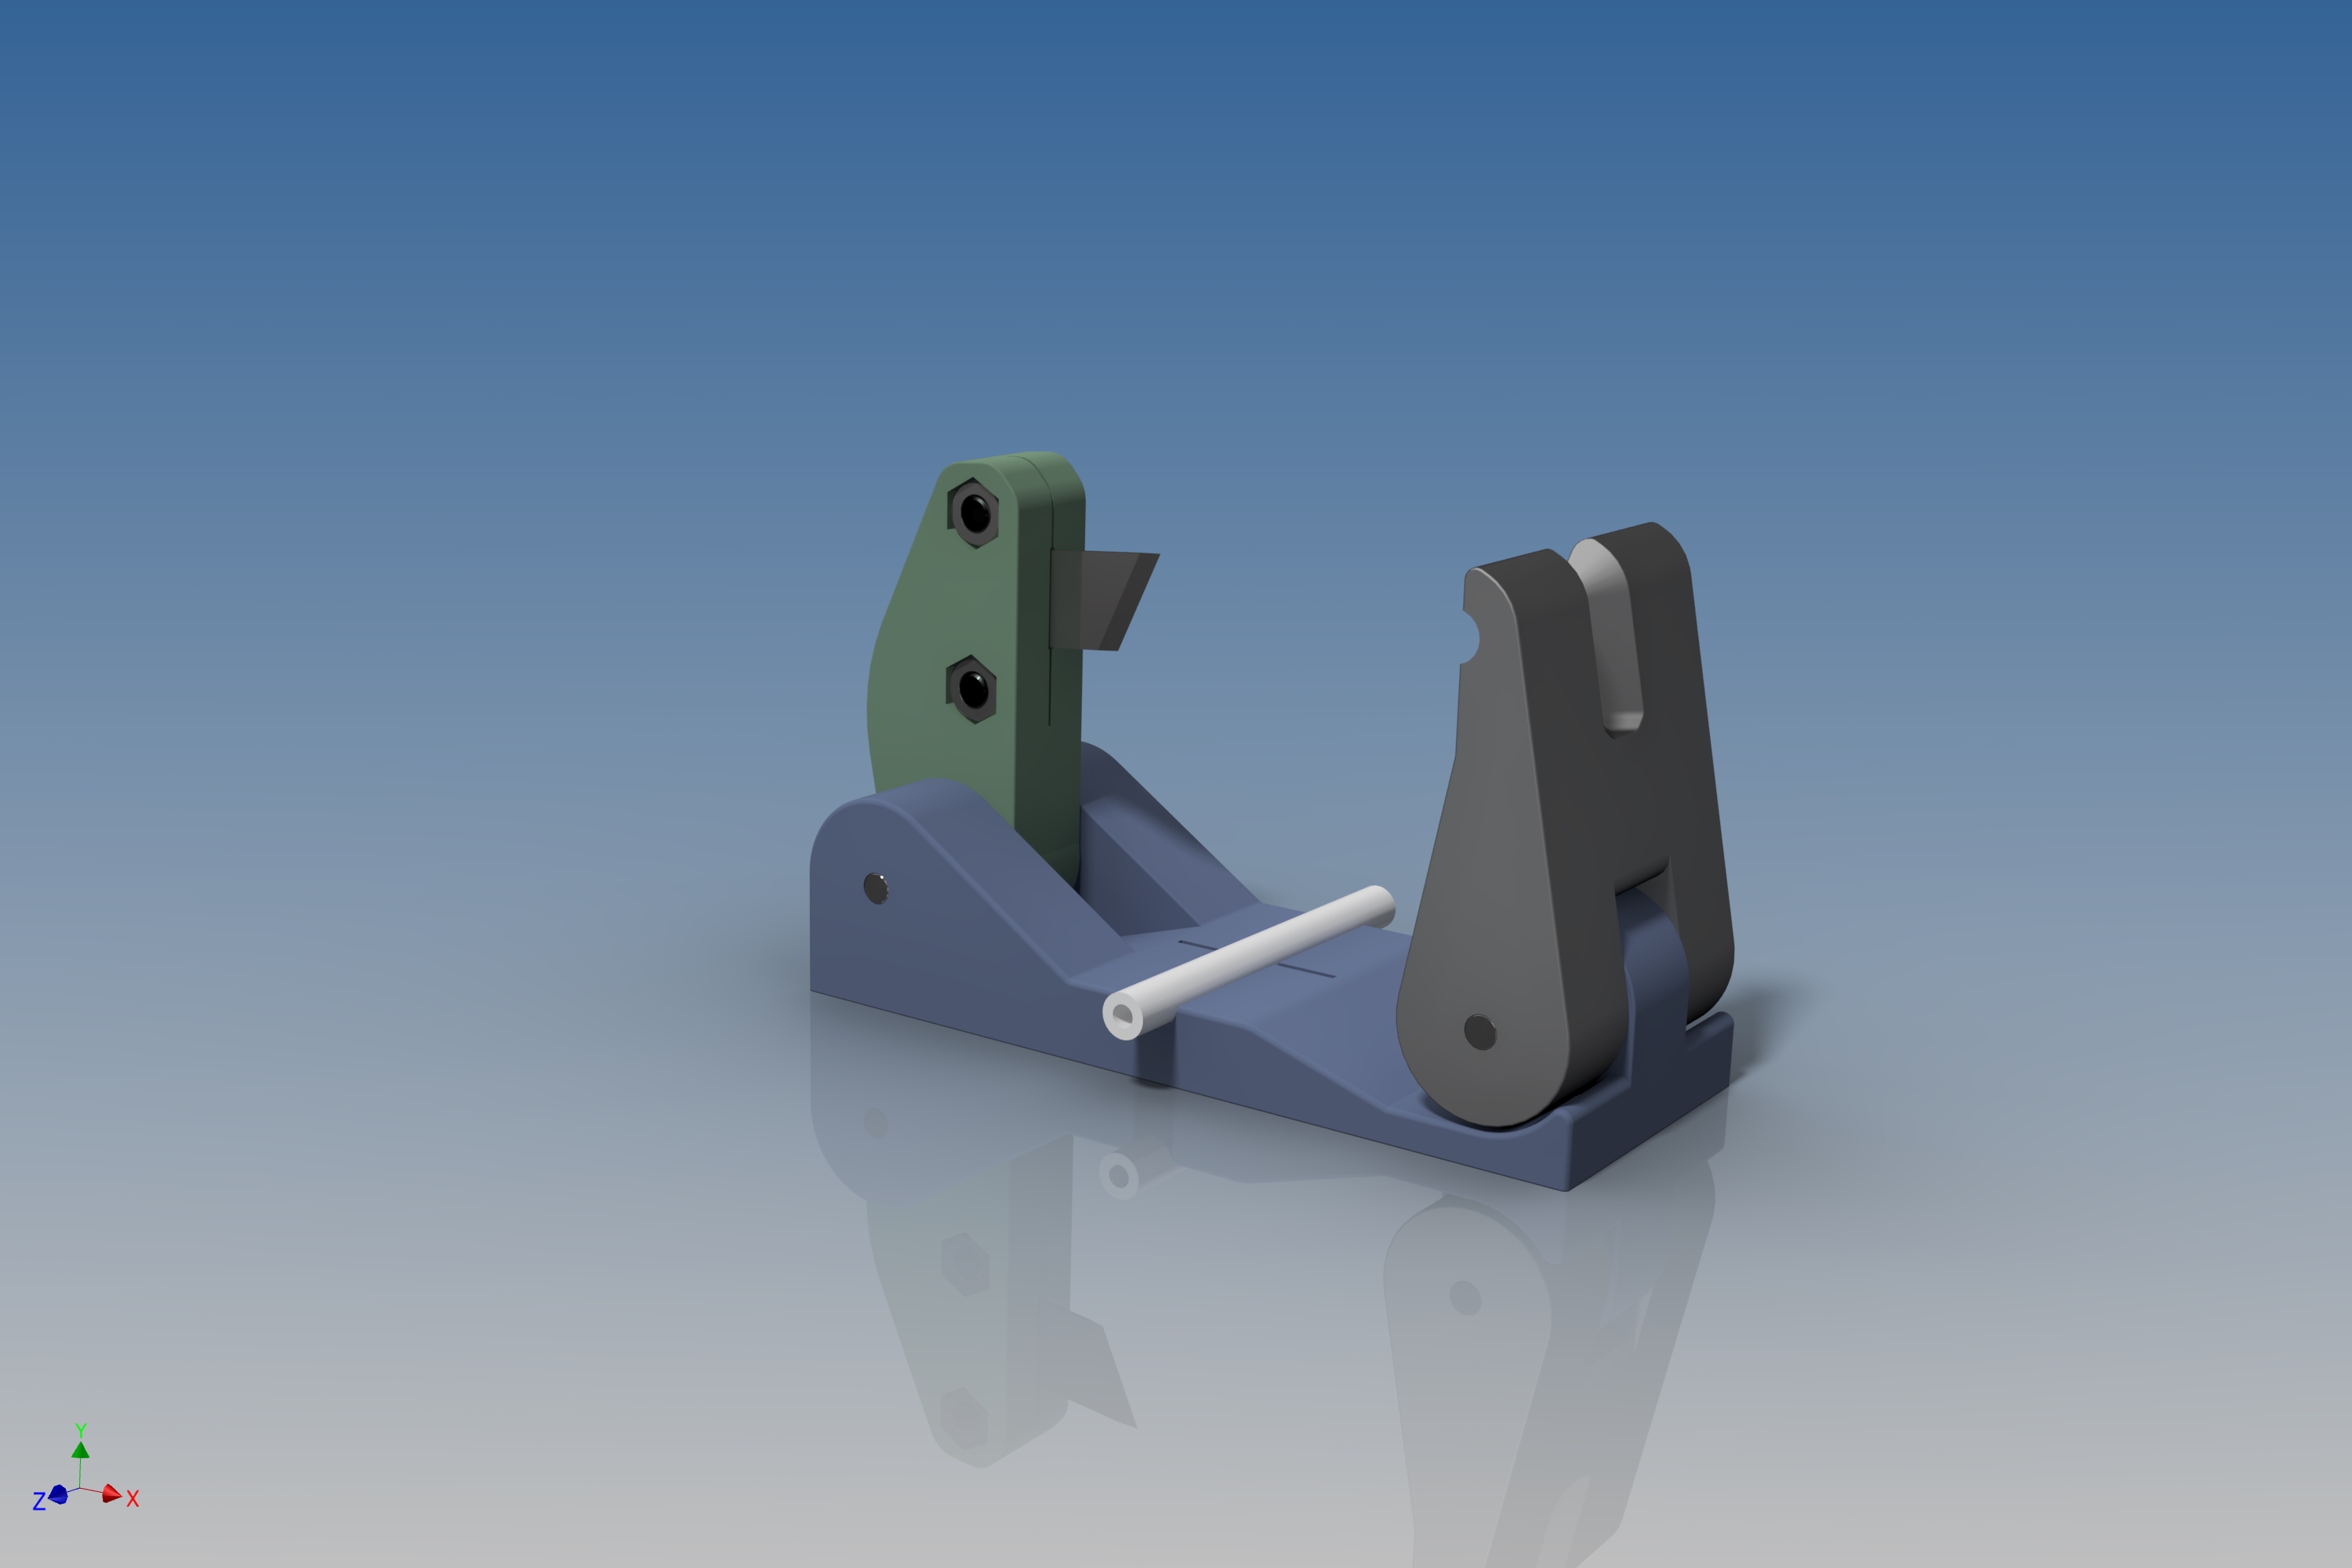 Teflon cutter knife for 3D Printing - 3D model